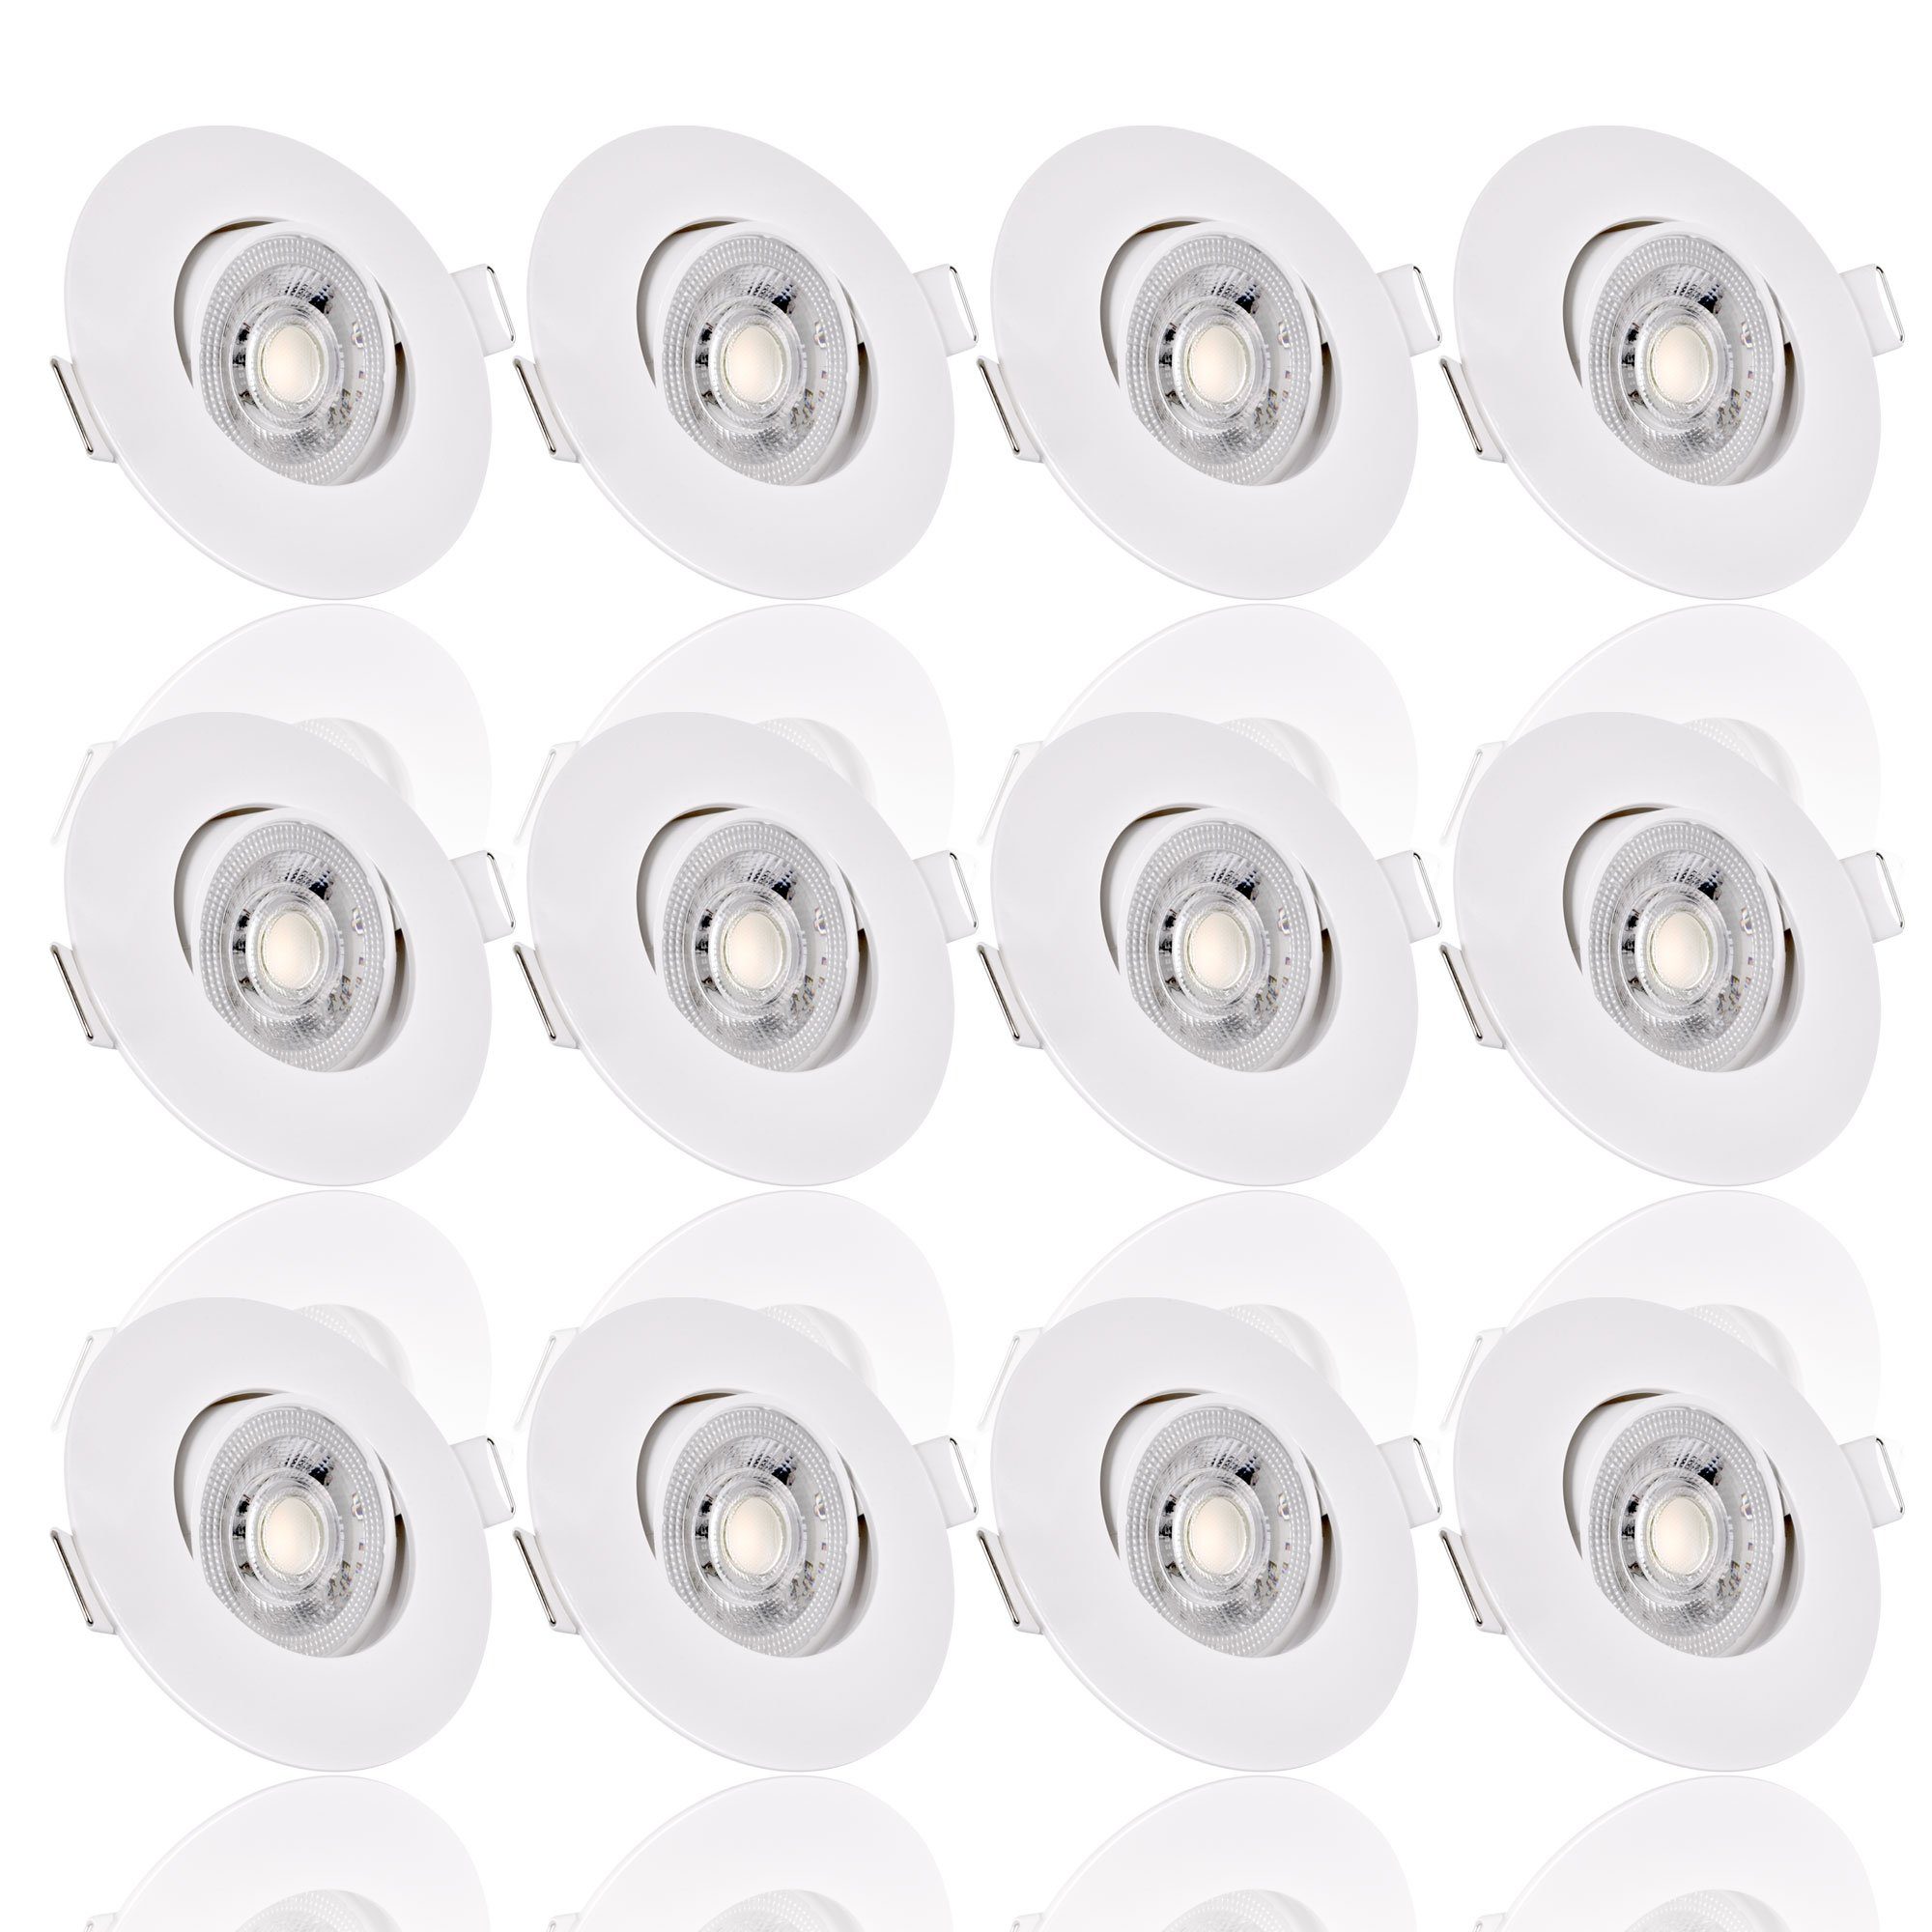 Eglo Einbau LED Lampen online kaufen | OTTO